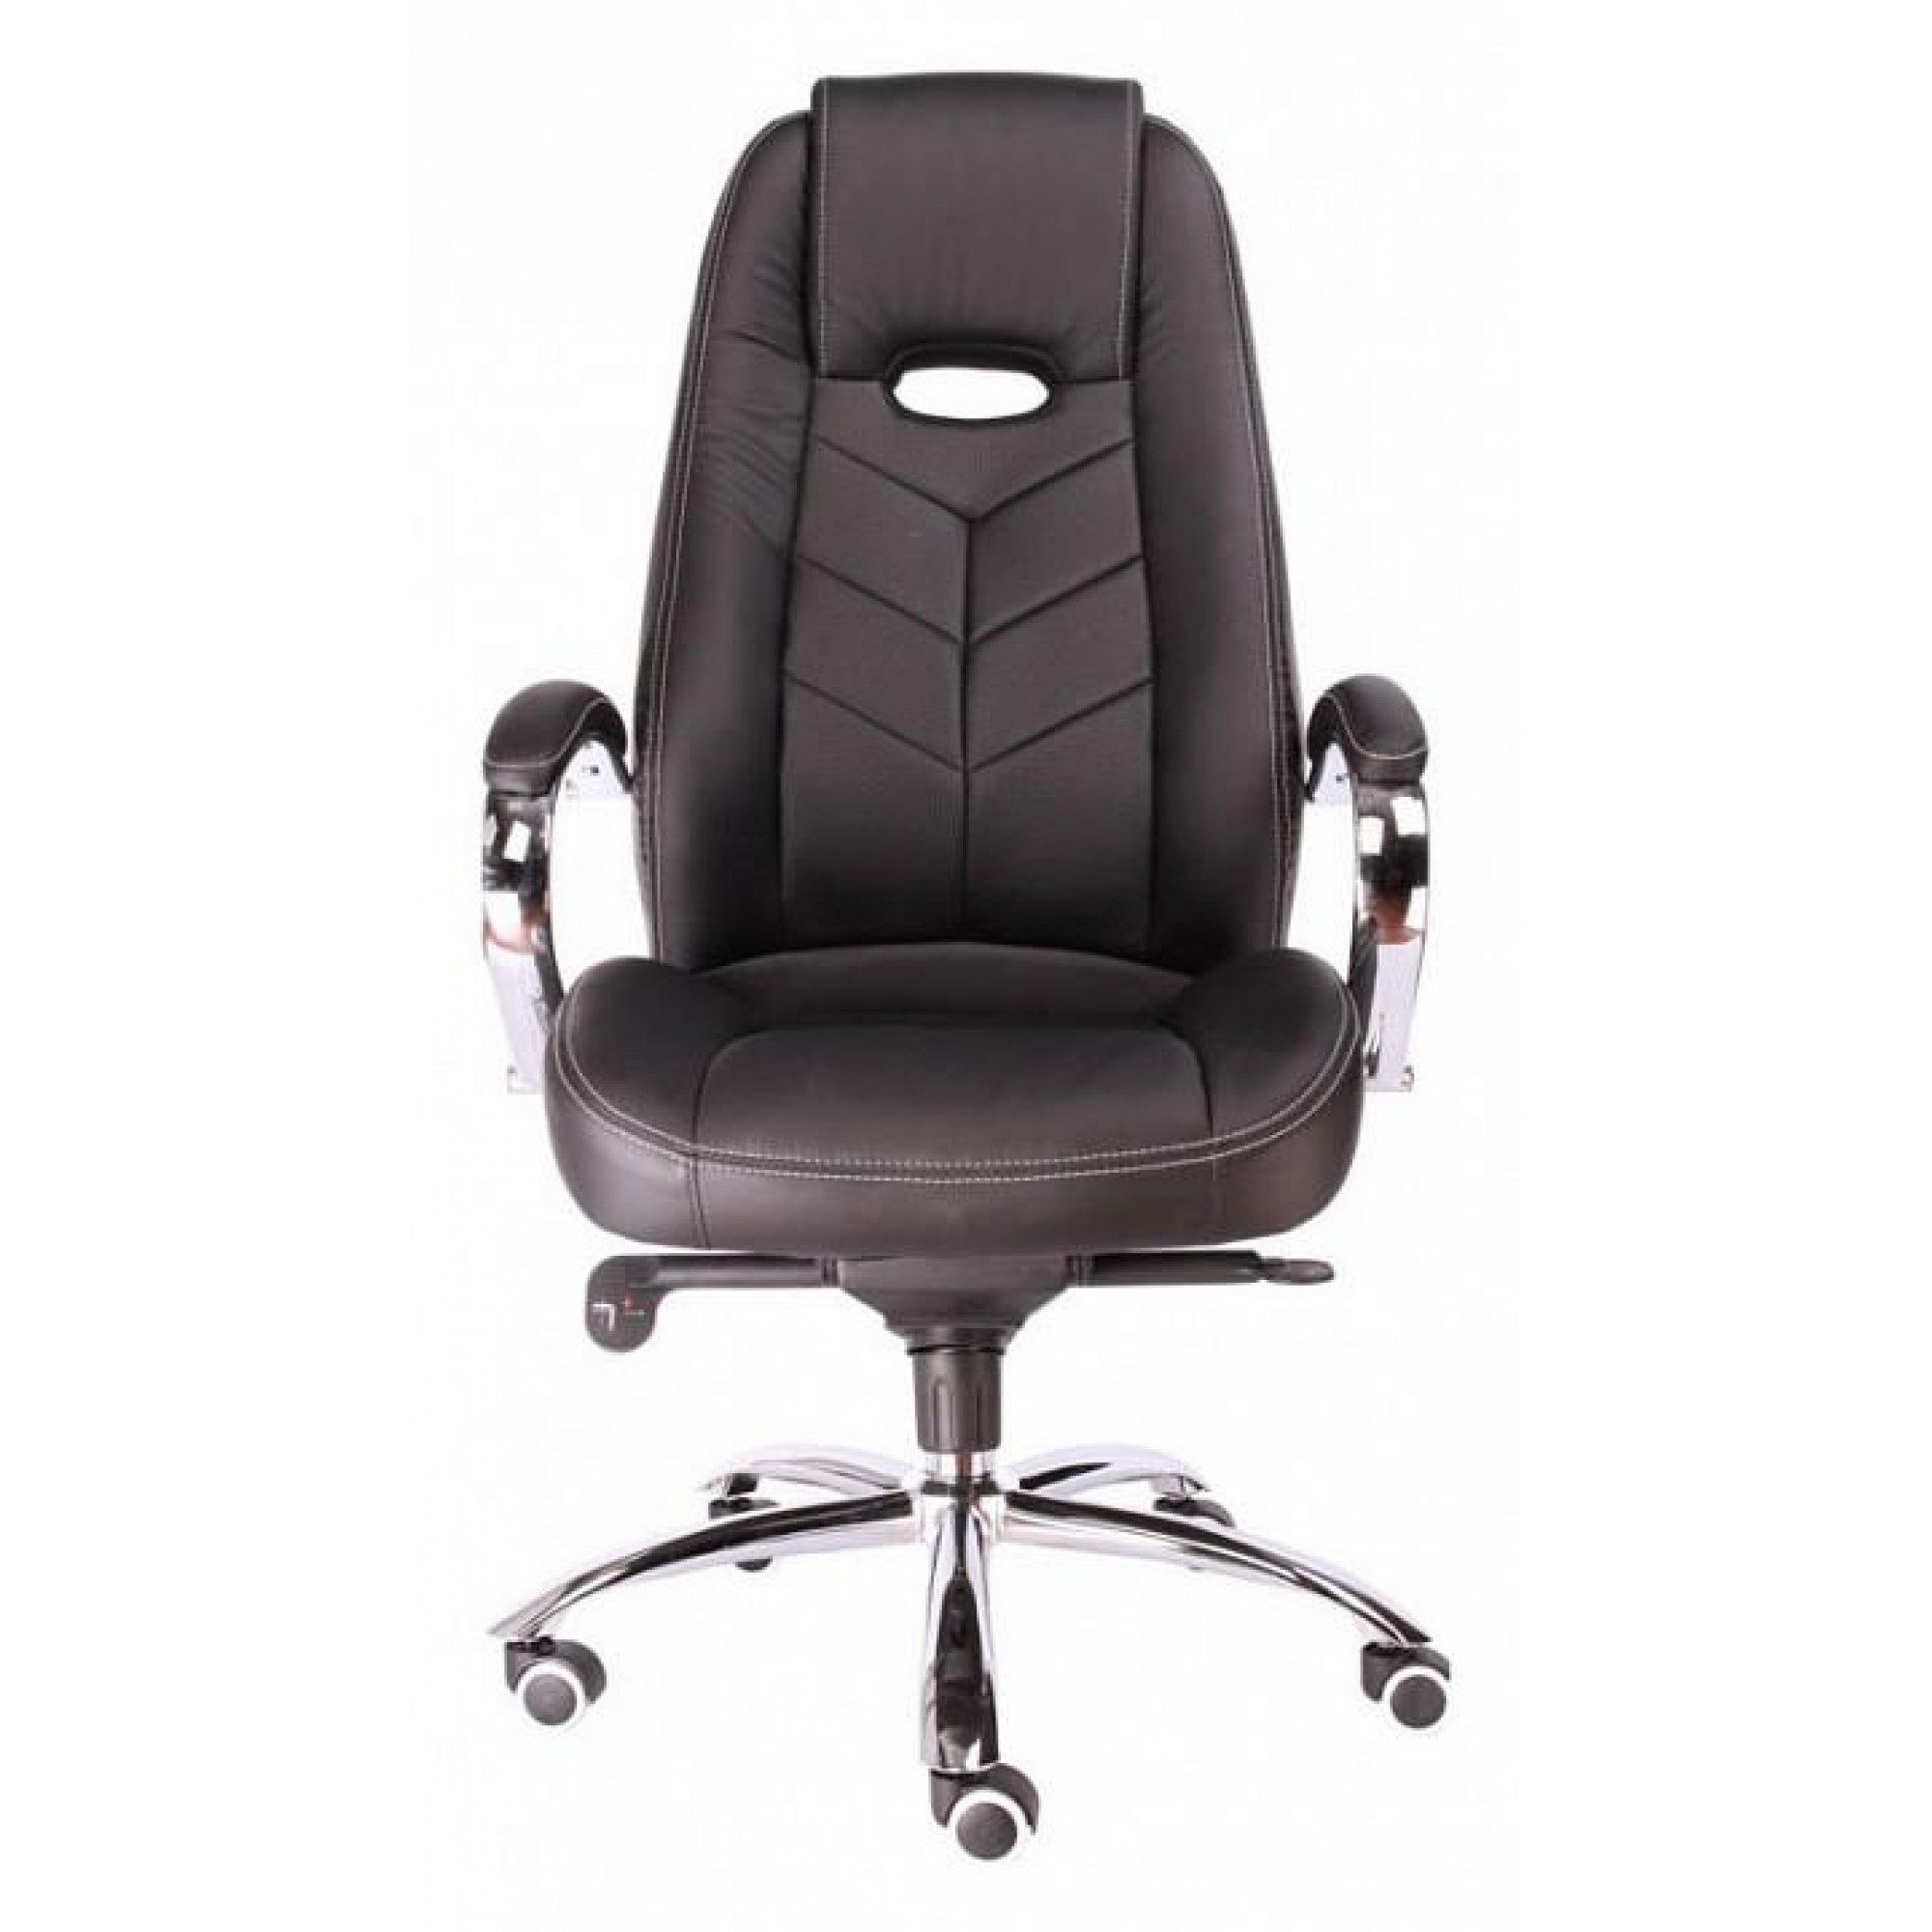 Кресло для руководителя Drift EC-331-1 Leather Black    EVP_202372